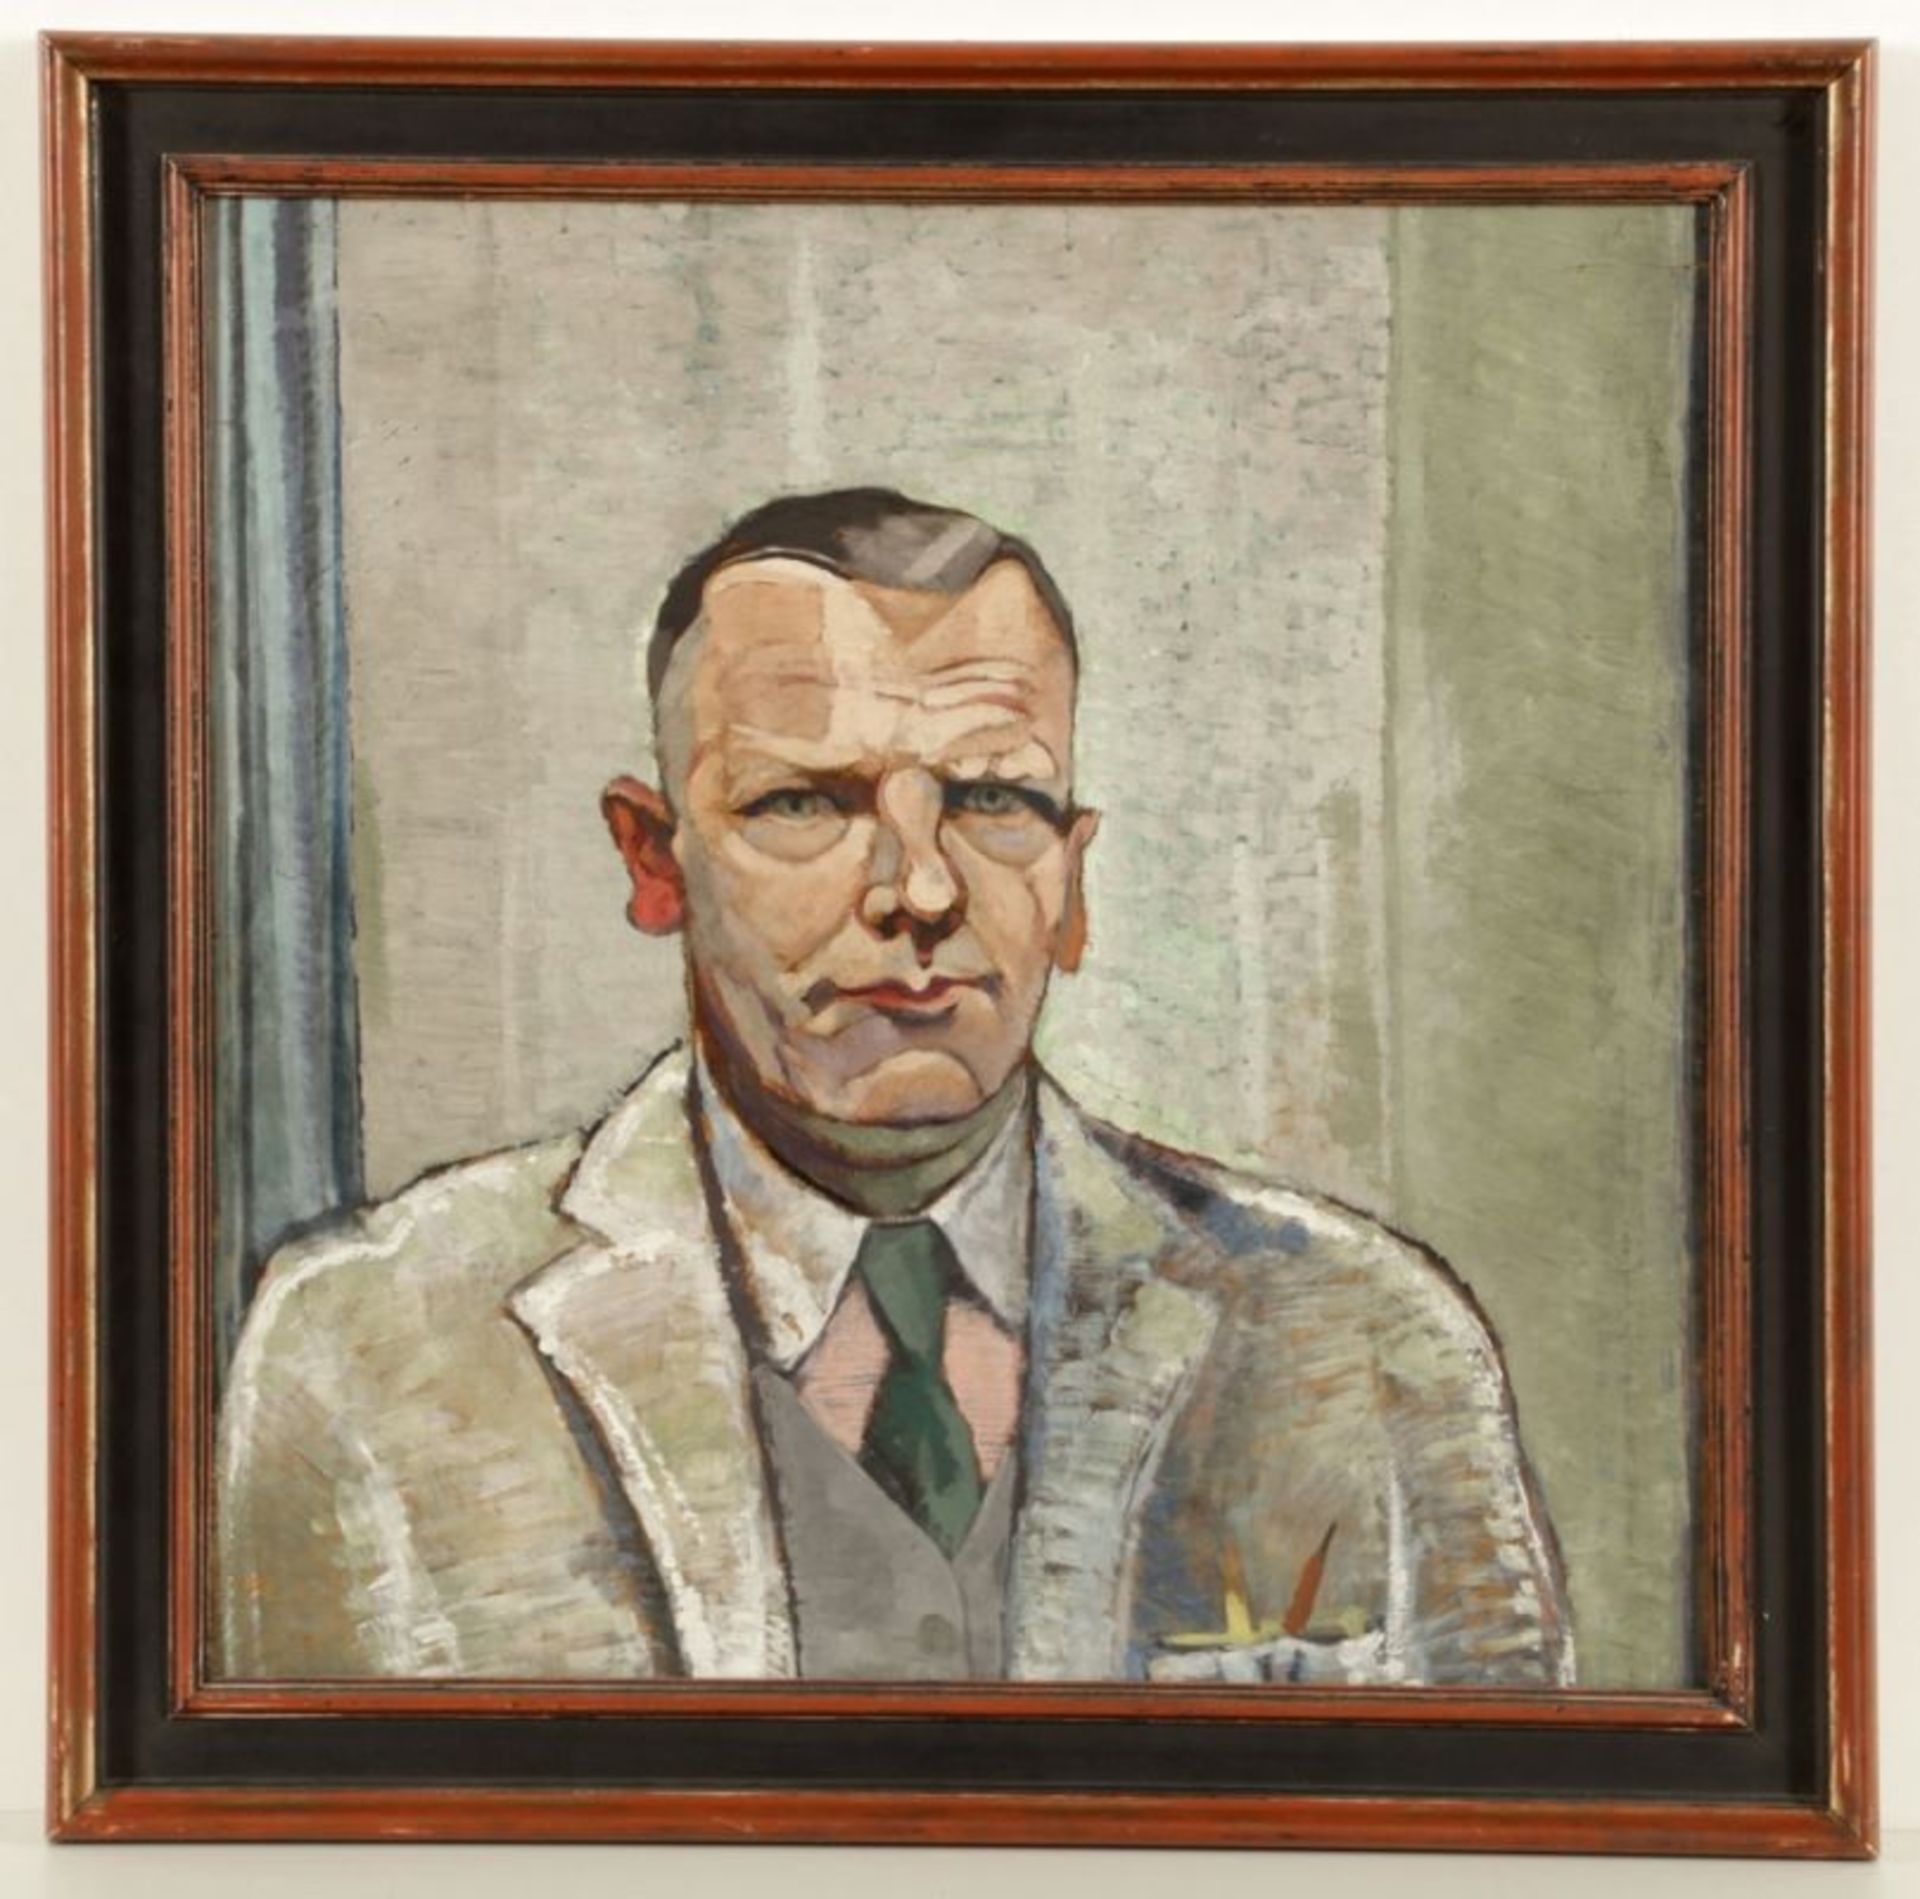 Künstler der Neuen Sachlichkeit- Herrenporträt - Öl/Holz. 59 x 59 cm. Rahmen.- - -22.00 % buyer's - Image 2 of 2